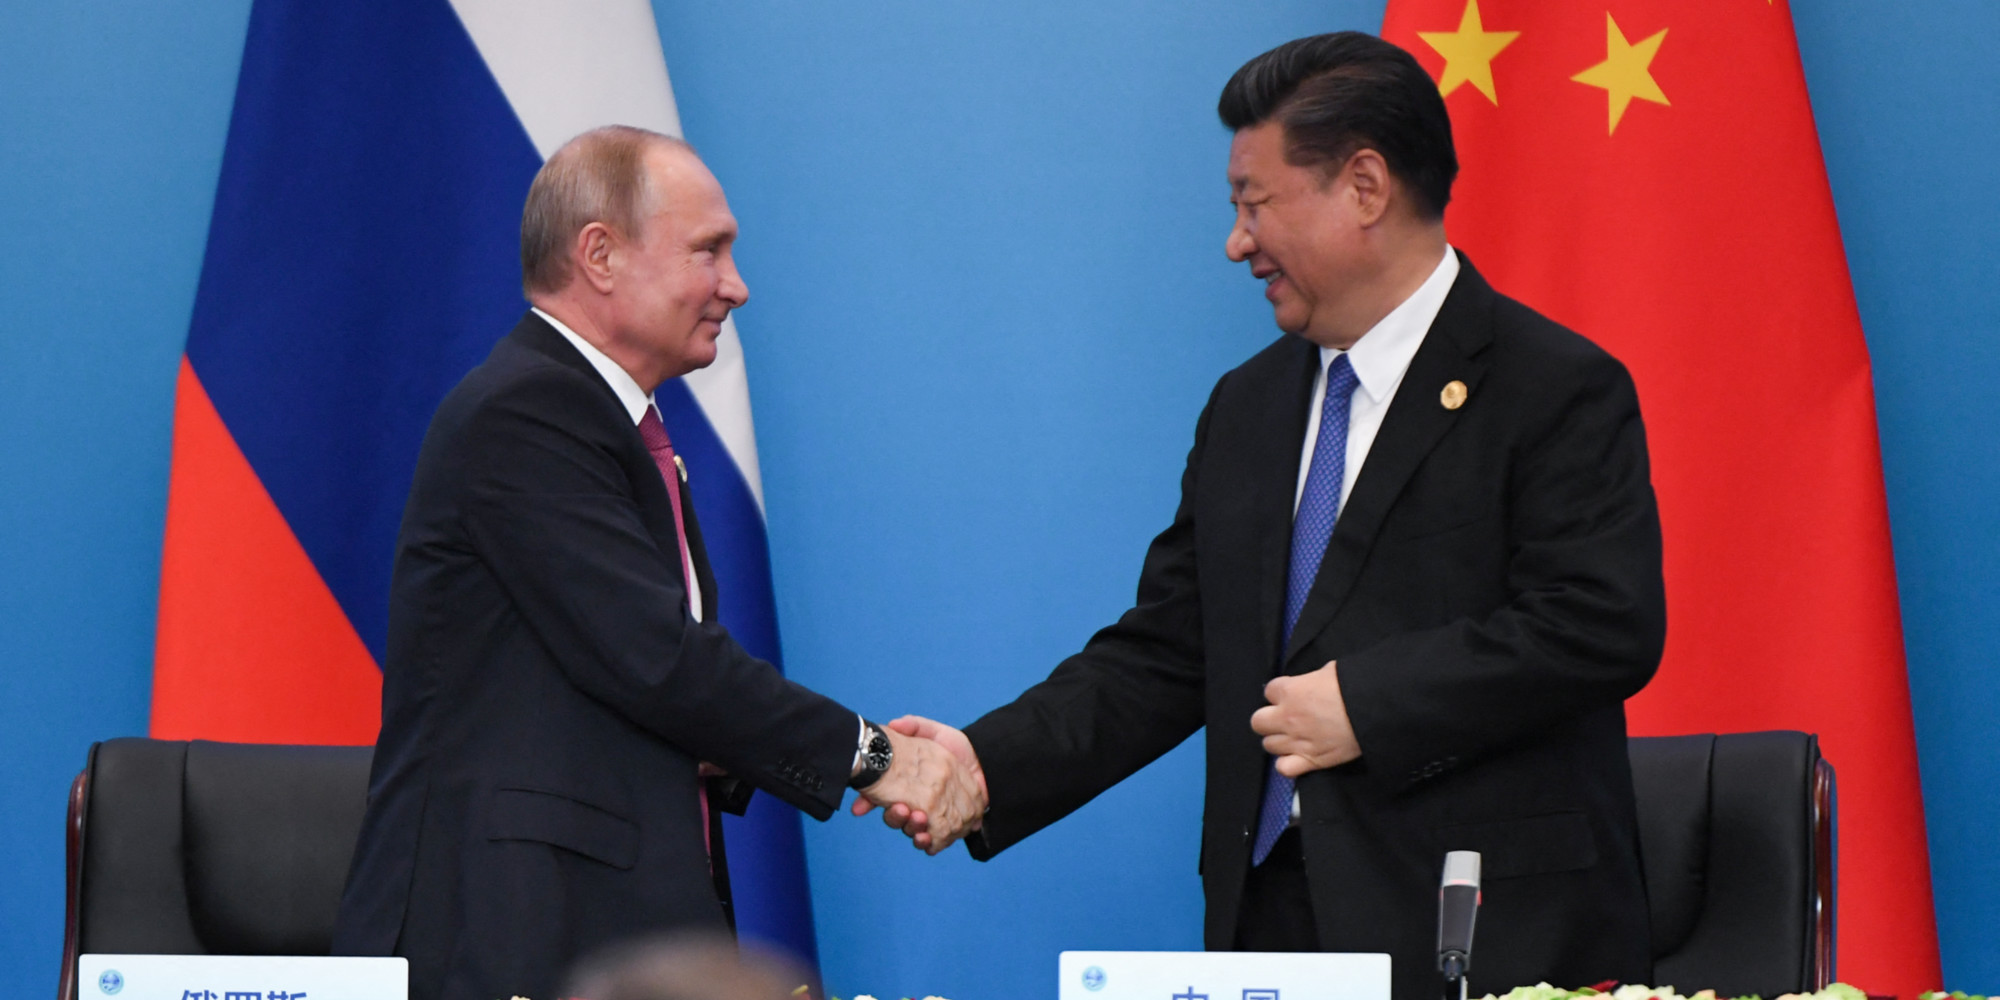 Le président russe Vladimir Poutine recevant son homologue chinois Xi Jinping